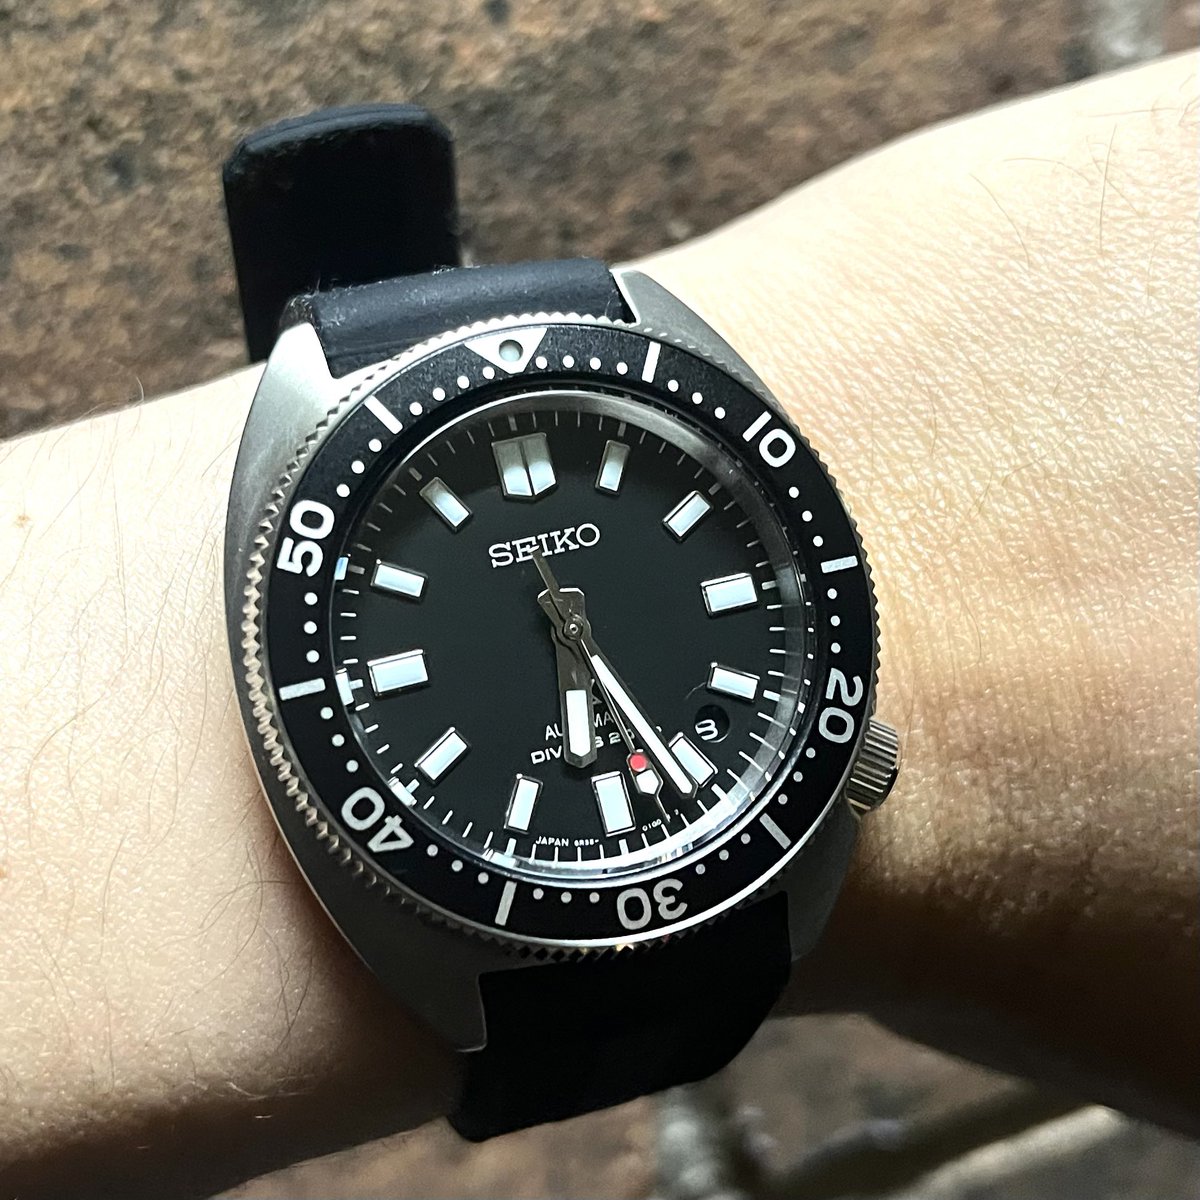 昨日の昼に香港から注文した時計が１日で届いた。Amazonと変わらん速さにビビる。
スリムタートル、いいやん！#SPB317 #seikoprospex